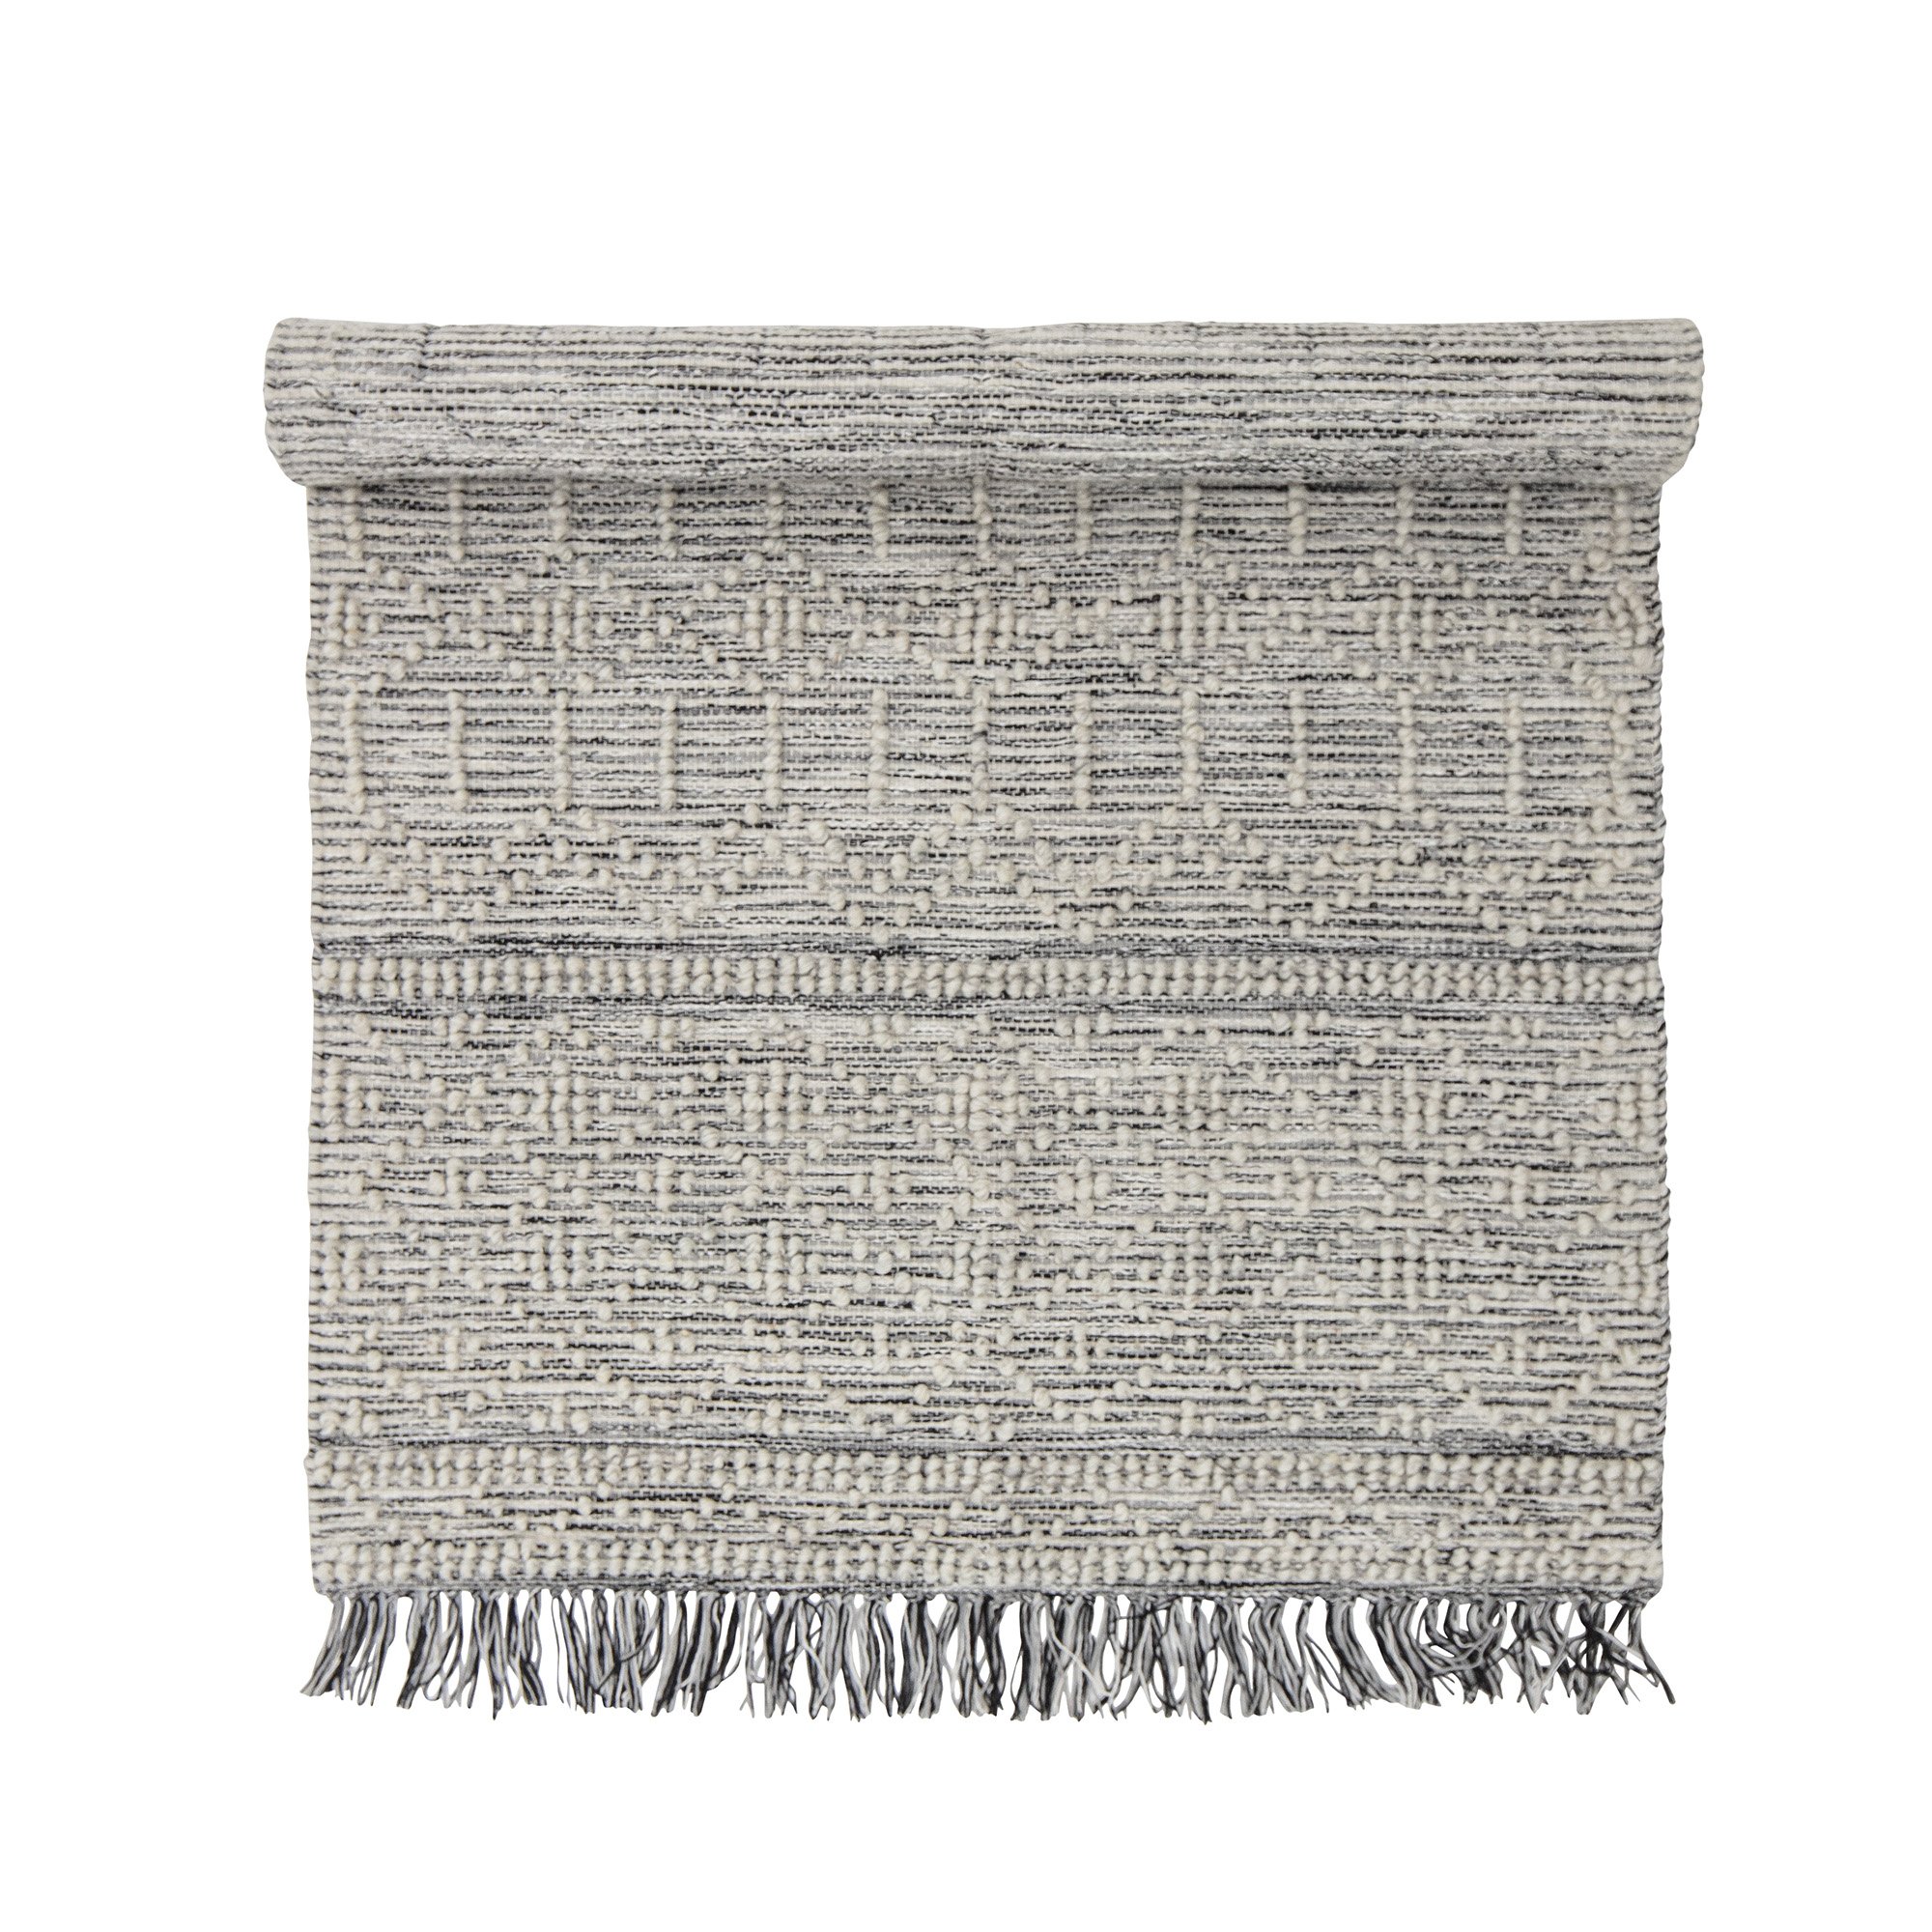 3: CREATIVE COLLECTION Maisy gulvtæppe, rektangulær - grå polyester og bomuld (150x90)